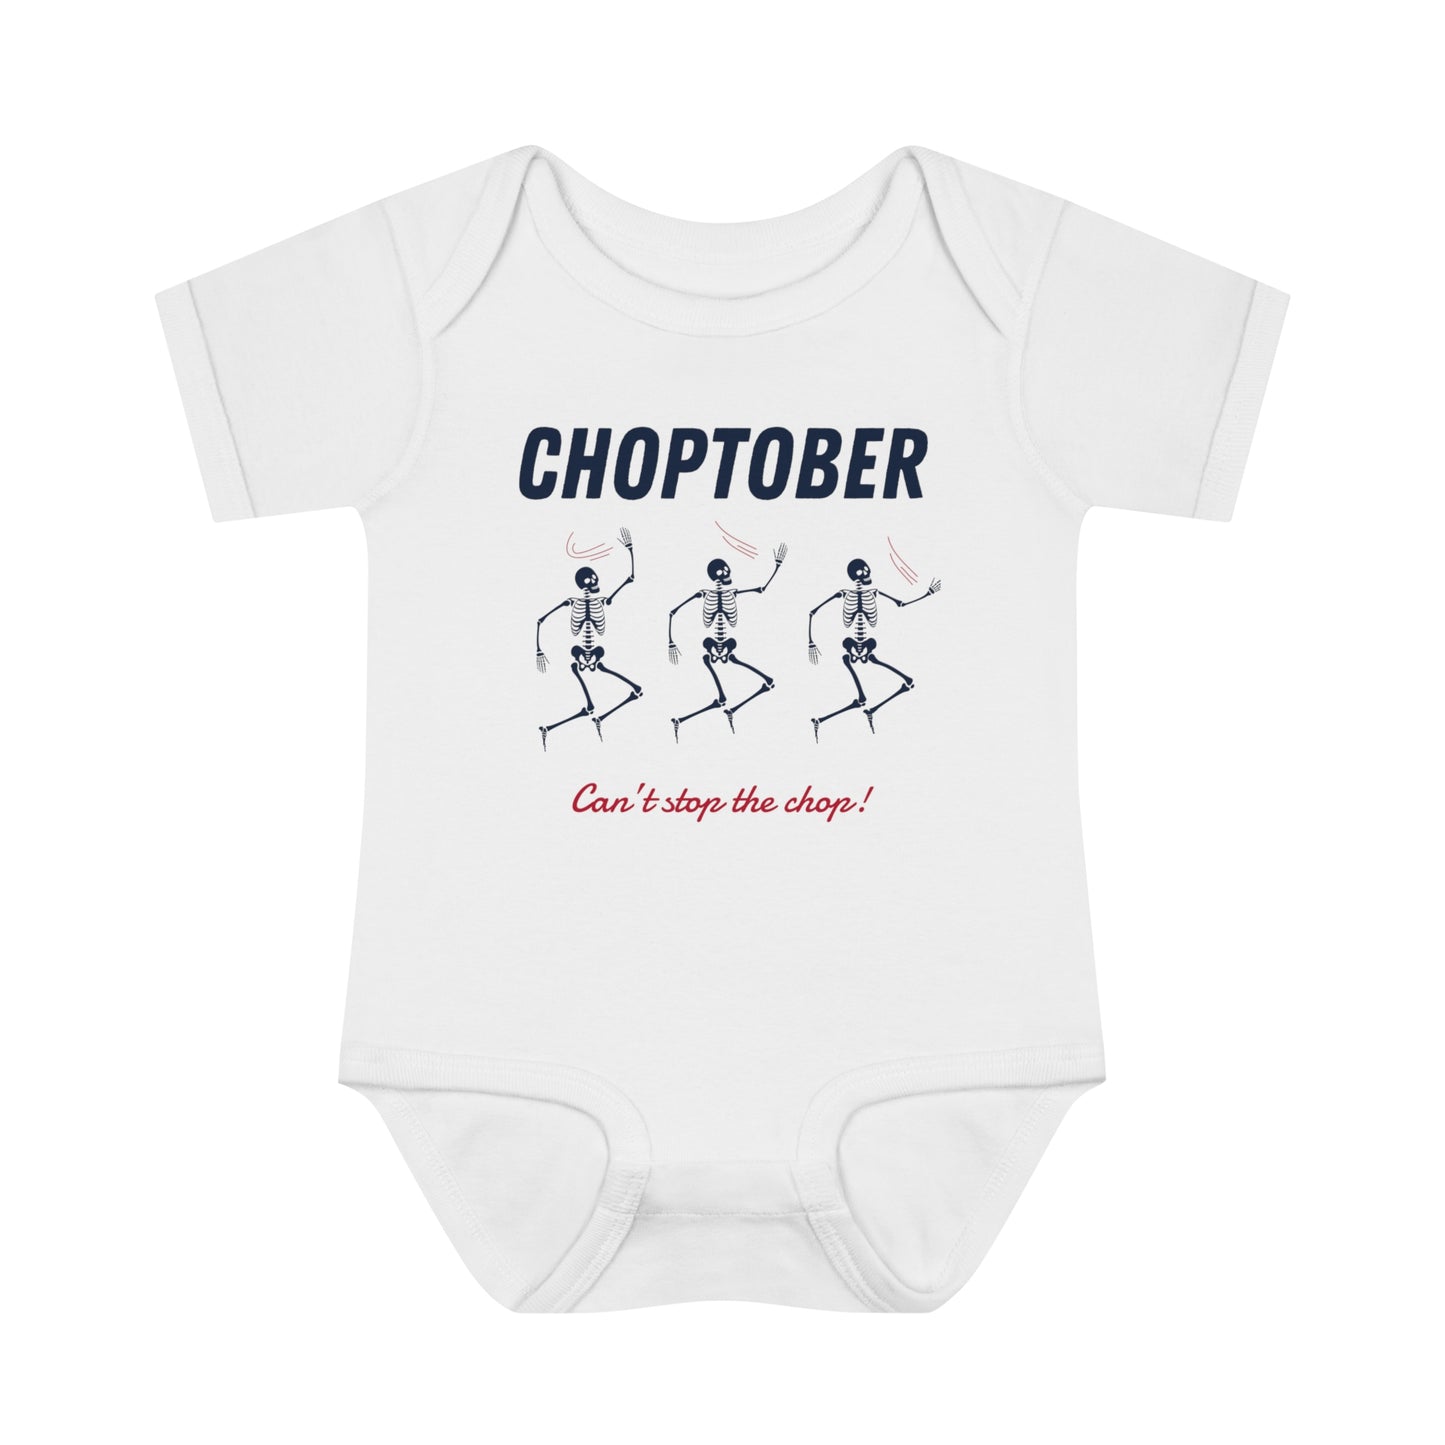 Atlanta Braves "Choptober" Baby Onesie